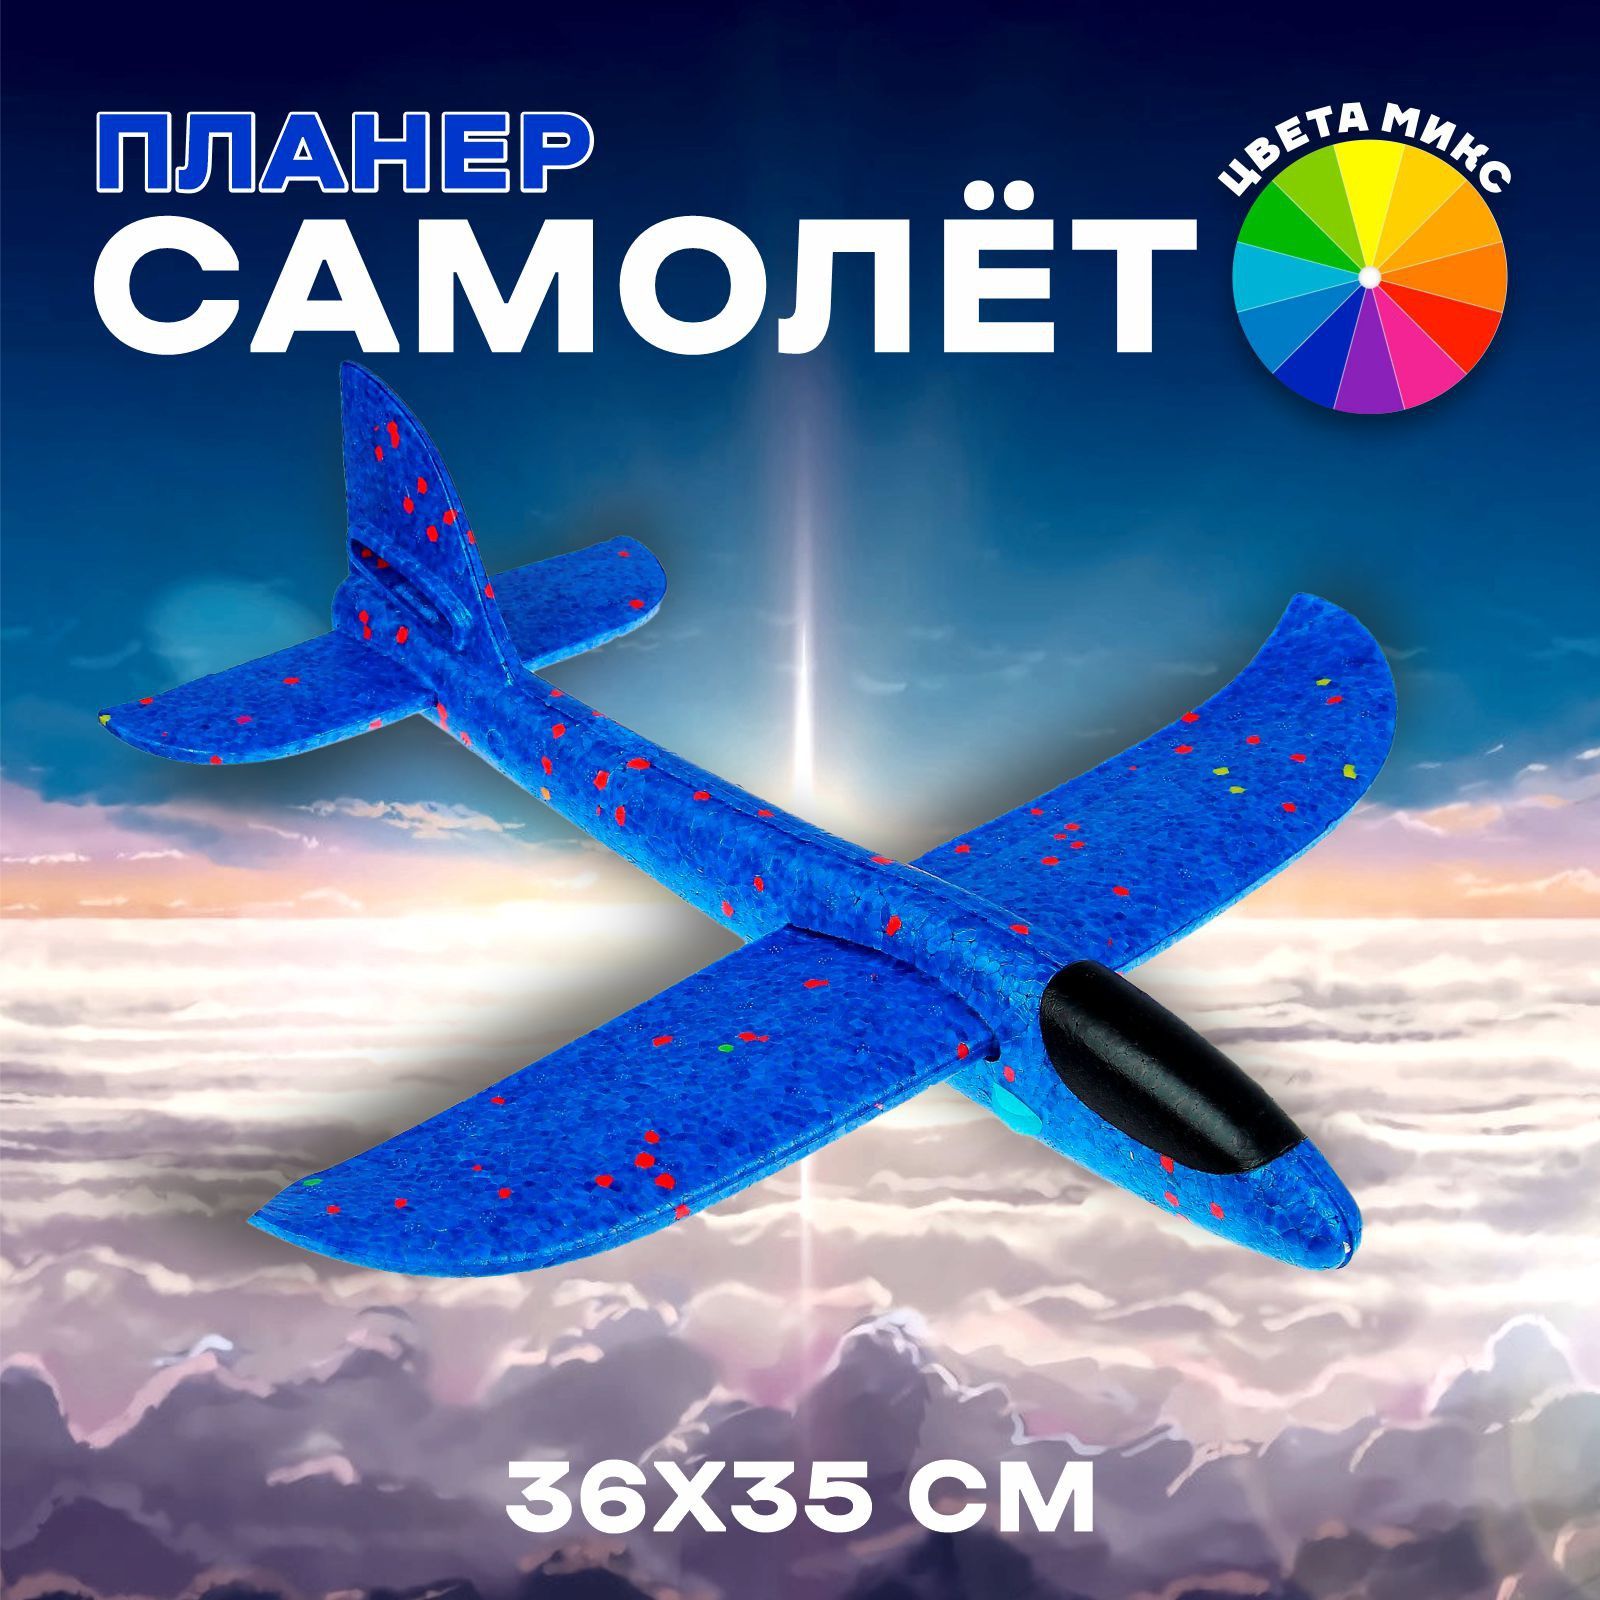 Как производится перевозка цветов в самолете по России